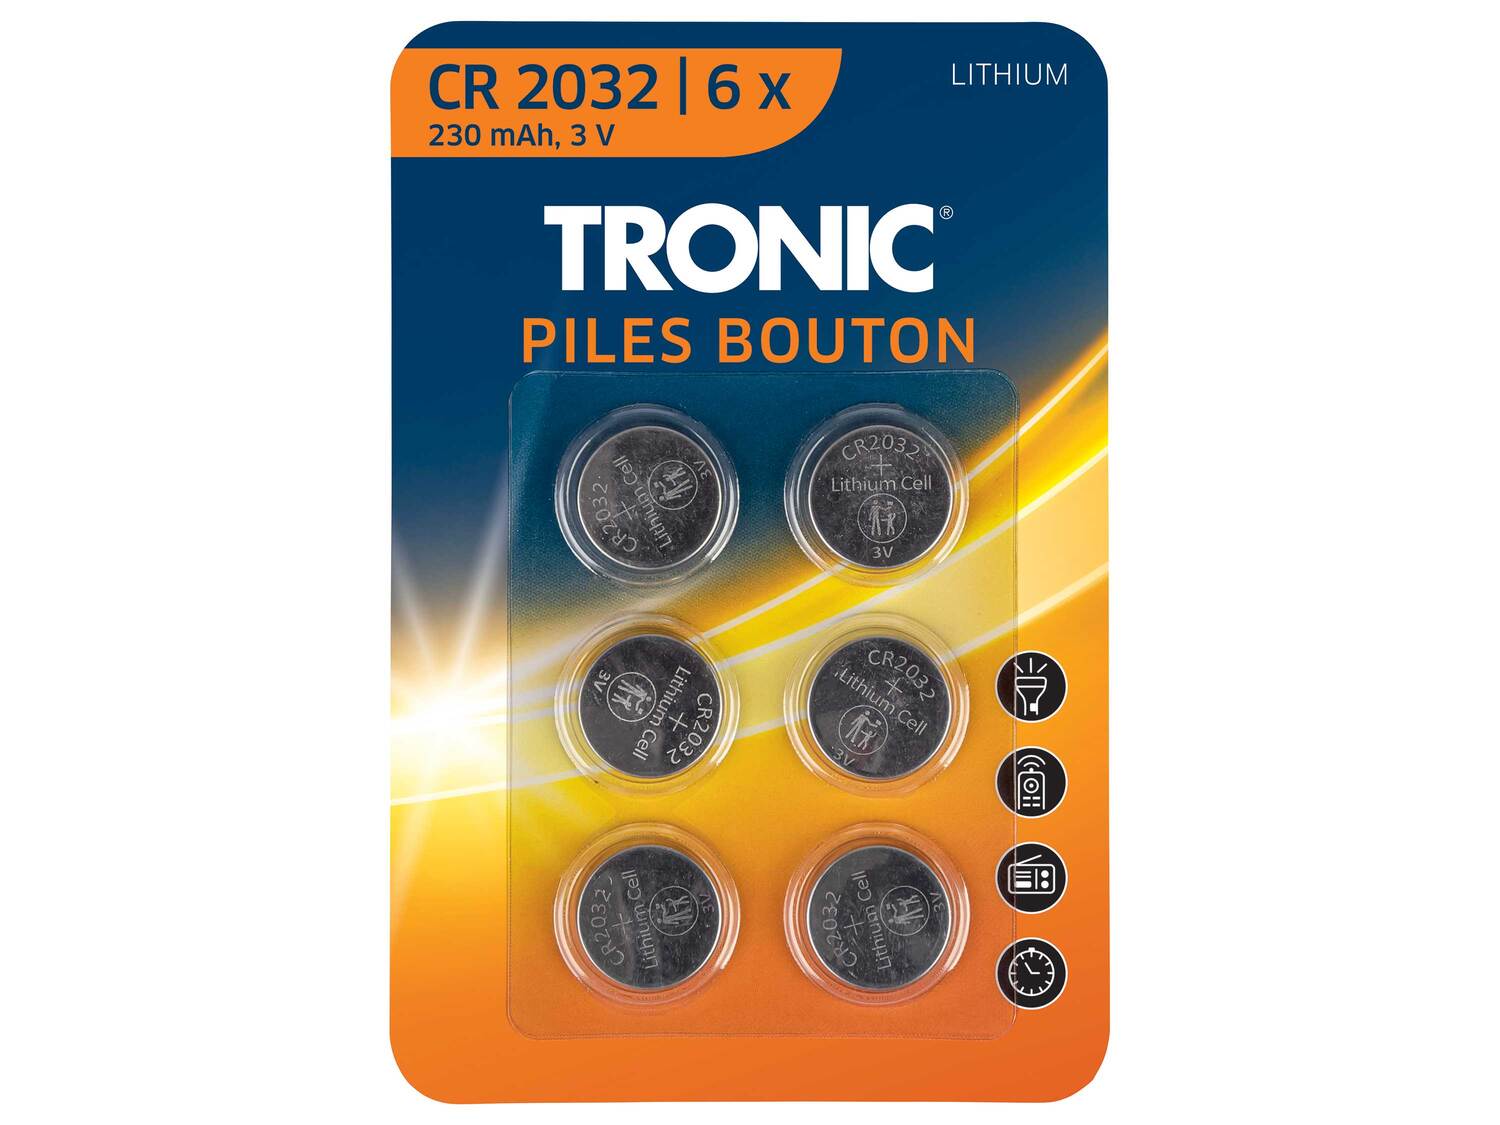 Piles bouton , le prix 1.49 € 
- Au choix : LR44 Alcalines, ou CR 2032 Lithium, ...